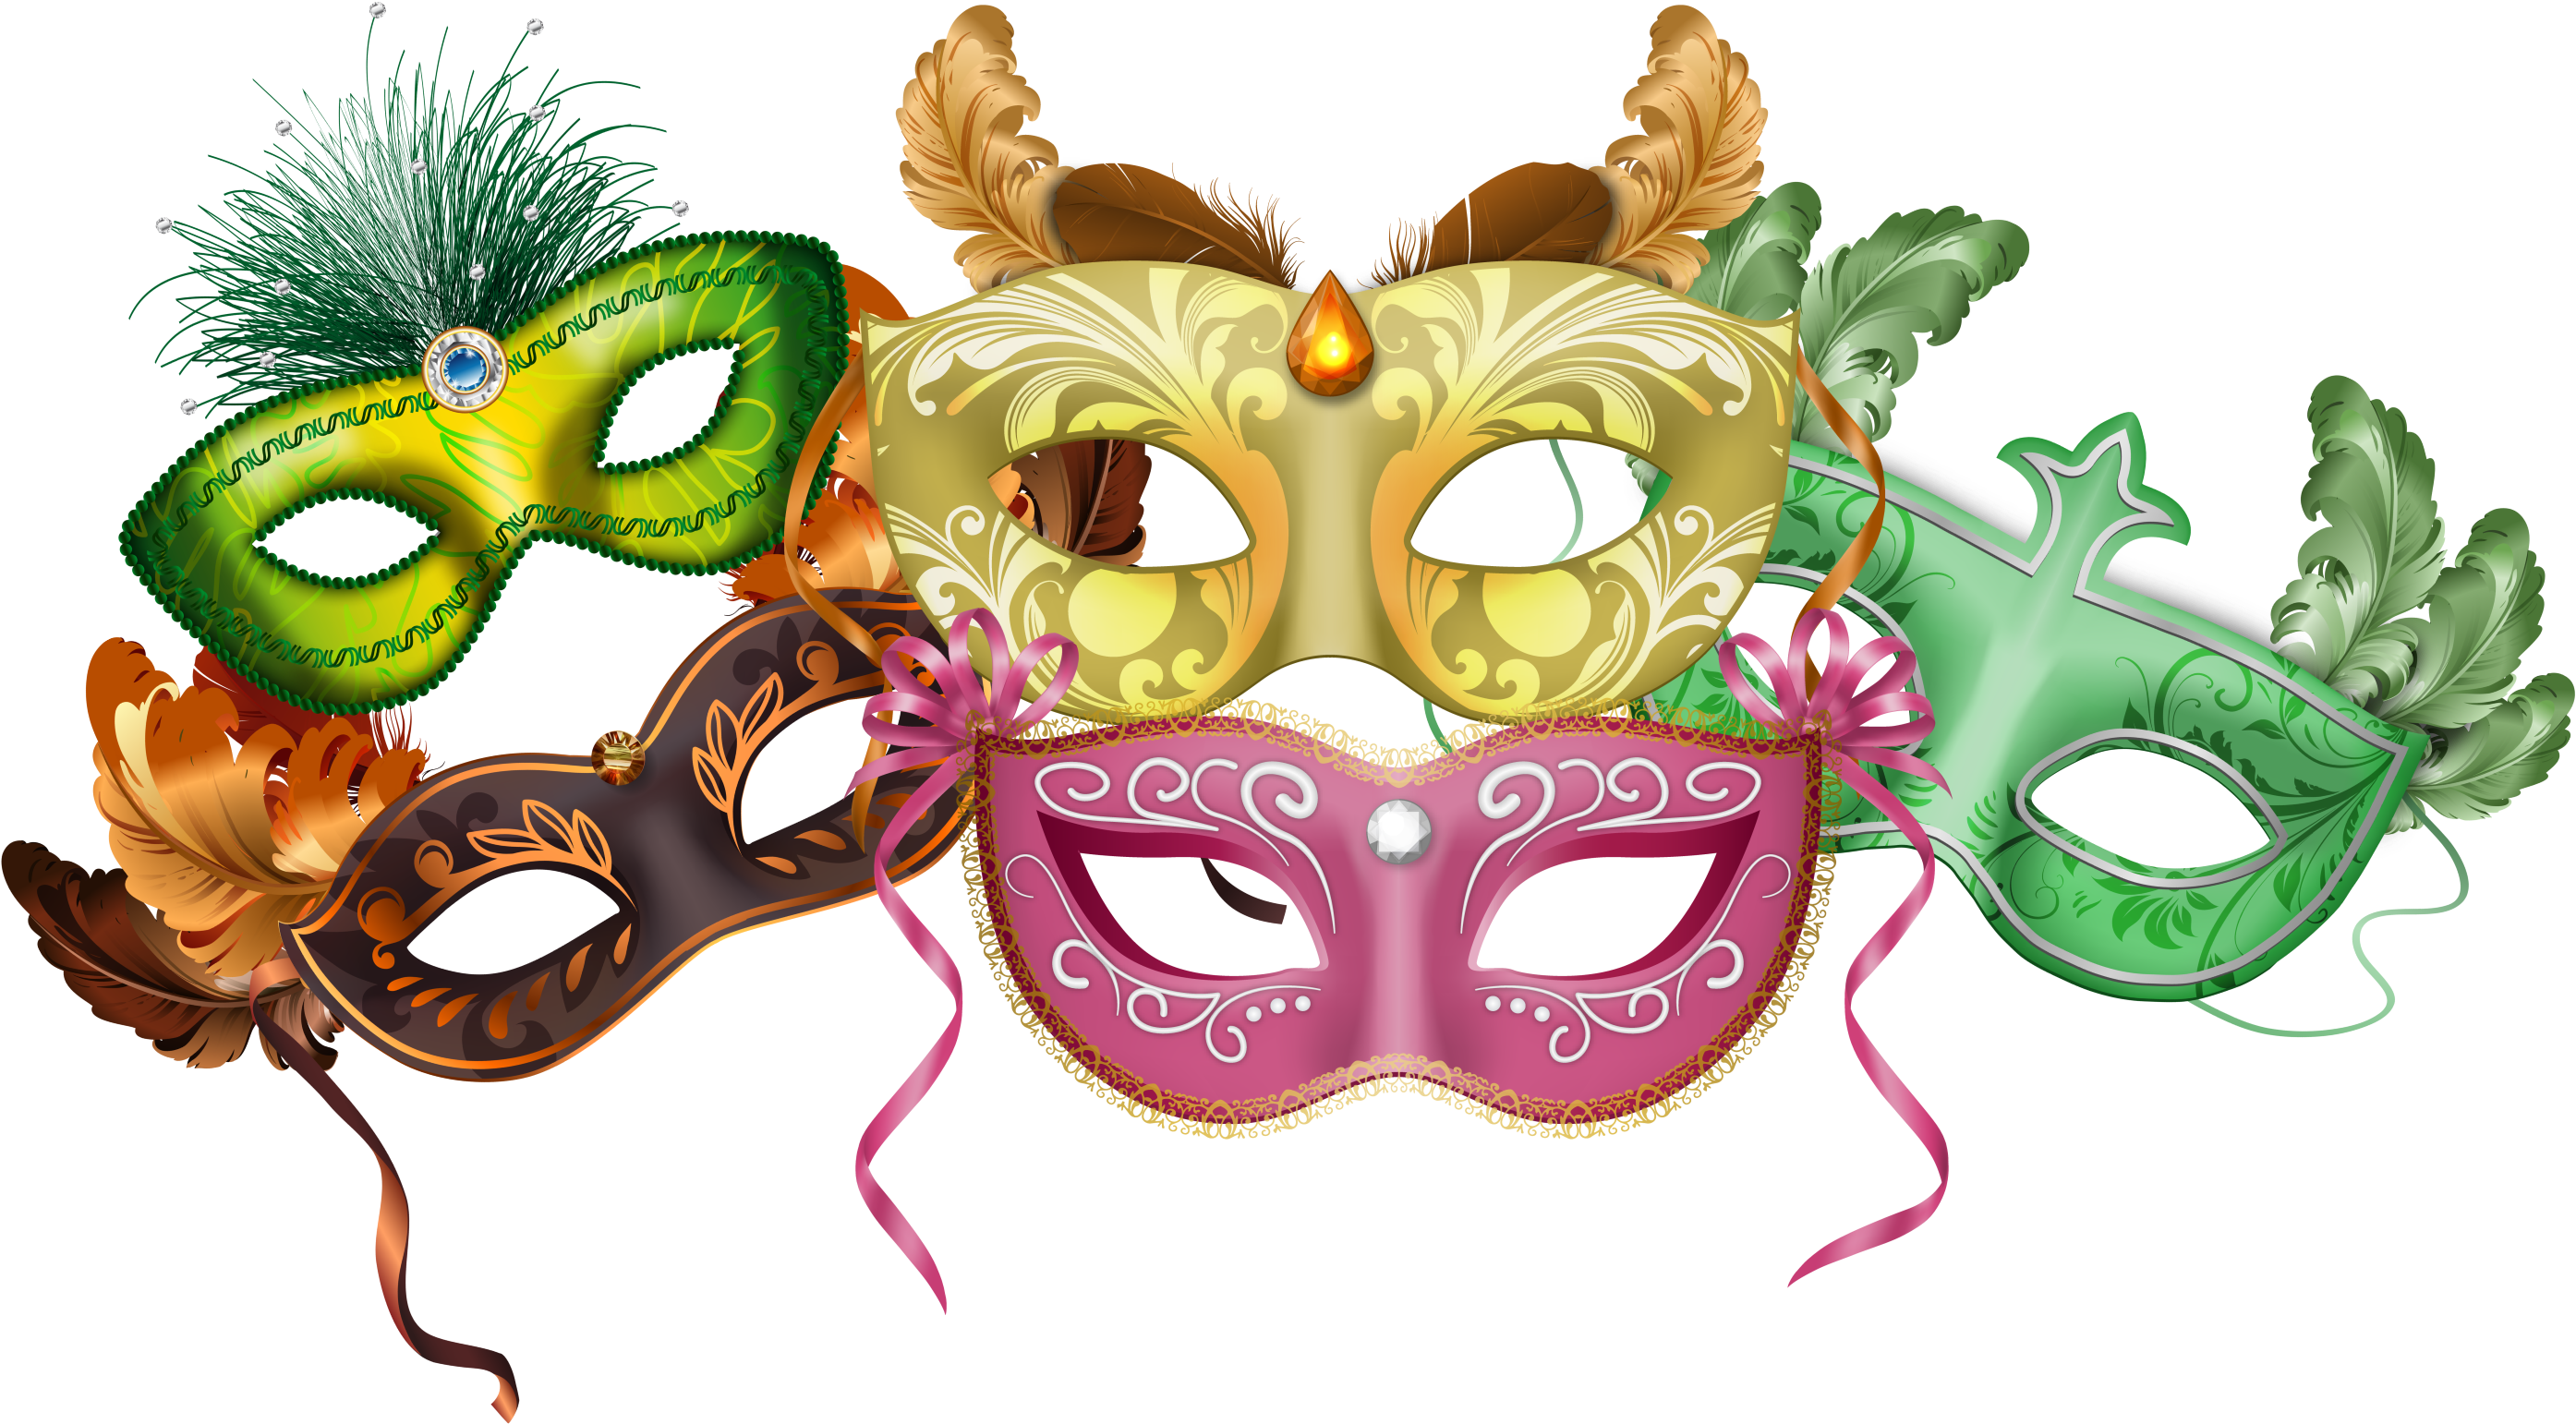 Картинка маска для детей: Детская карнавальная маска из бумаги своими руками. Развитие ребенка. Делаем детскую карнавальную маску из бумаги. Сегодня вме…